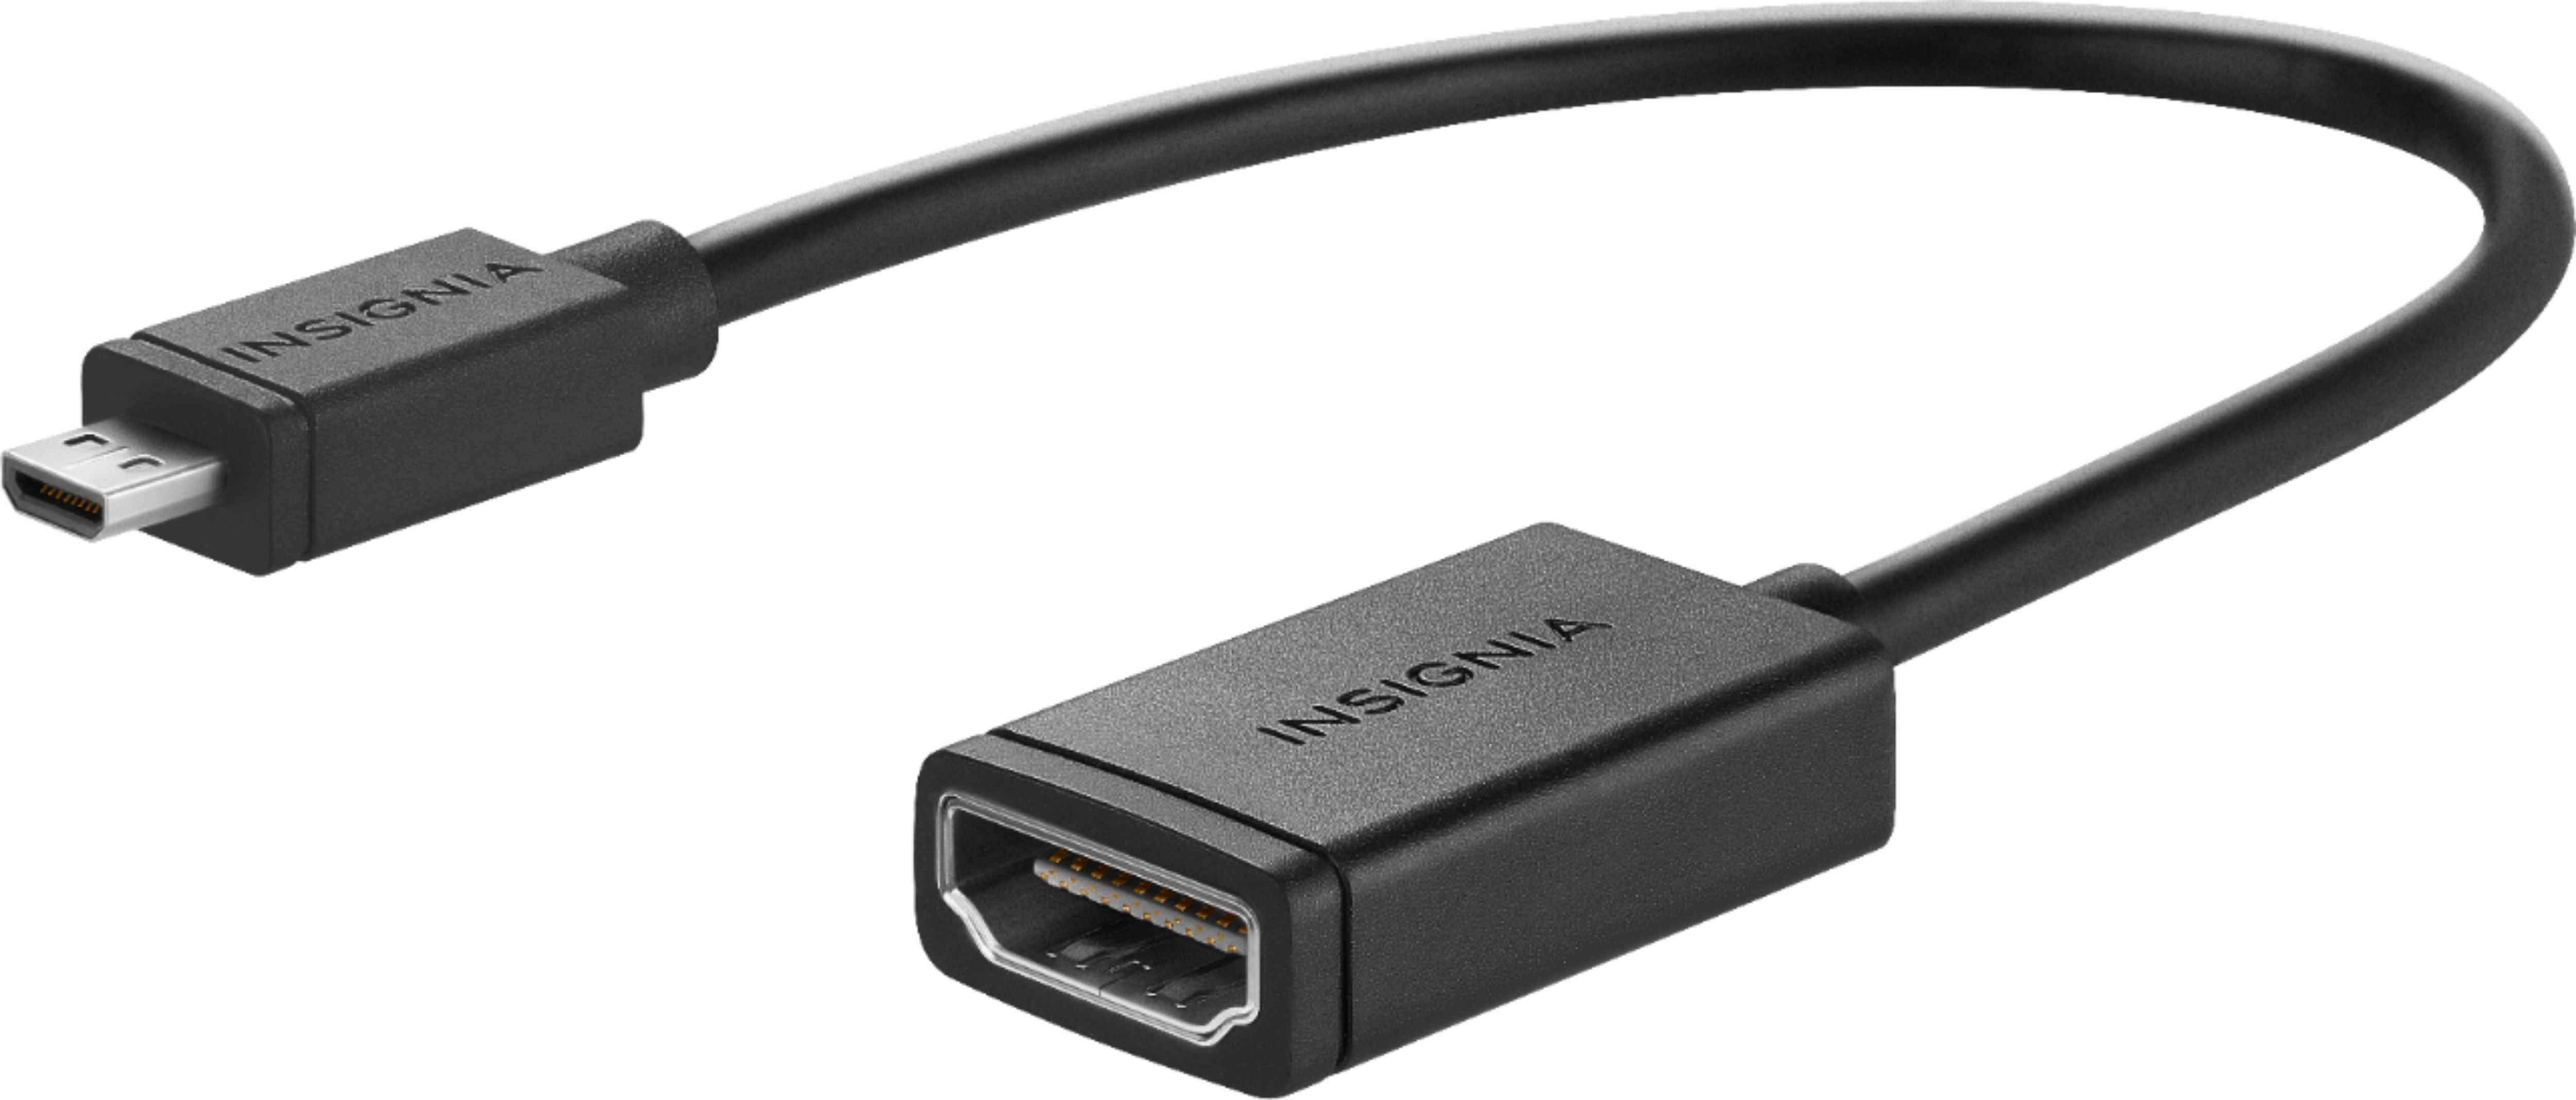 Insignia™ Micro HDMI to HDMI Adapter Black NS-HG1182 - Buy